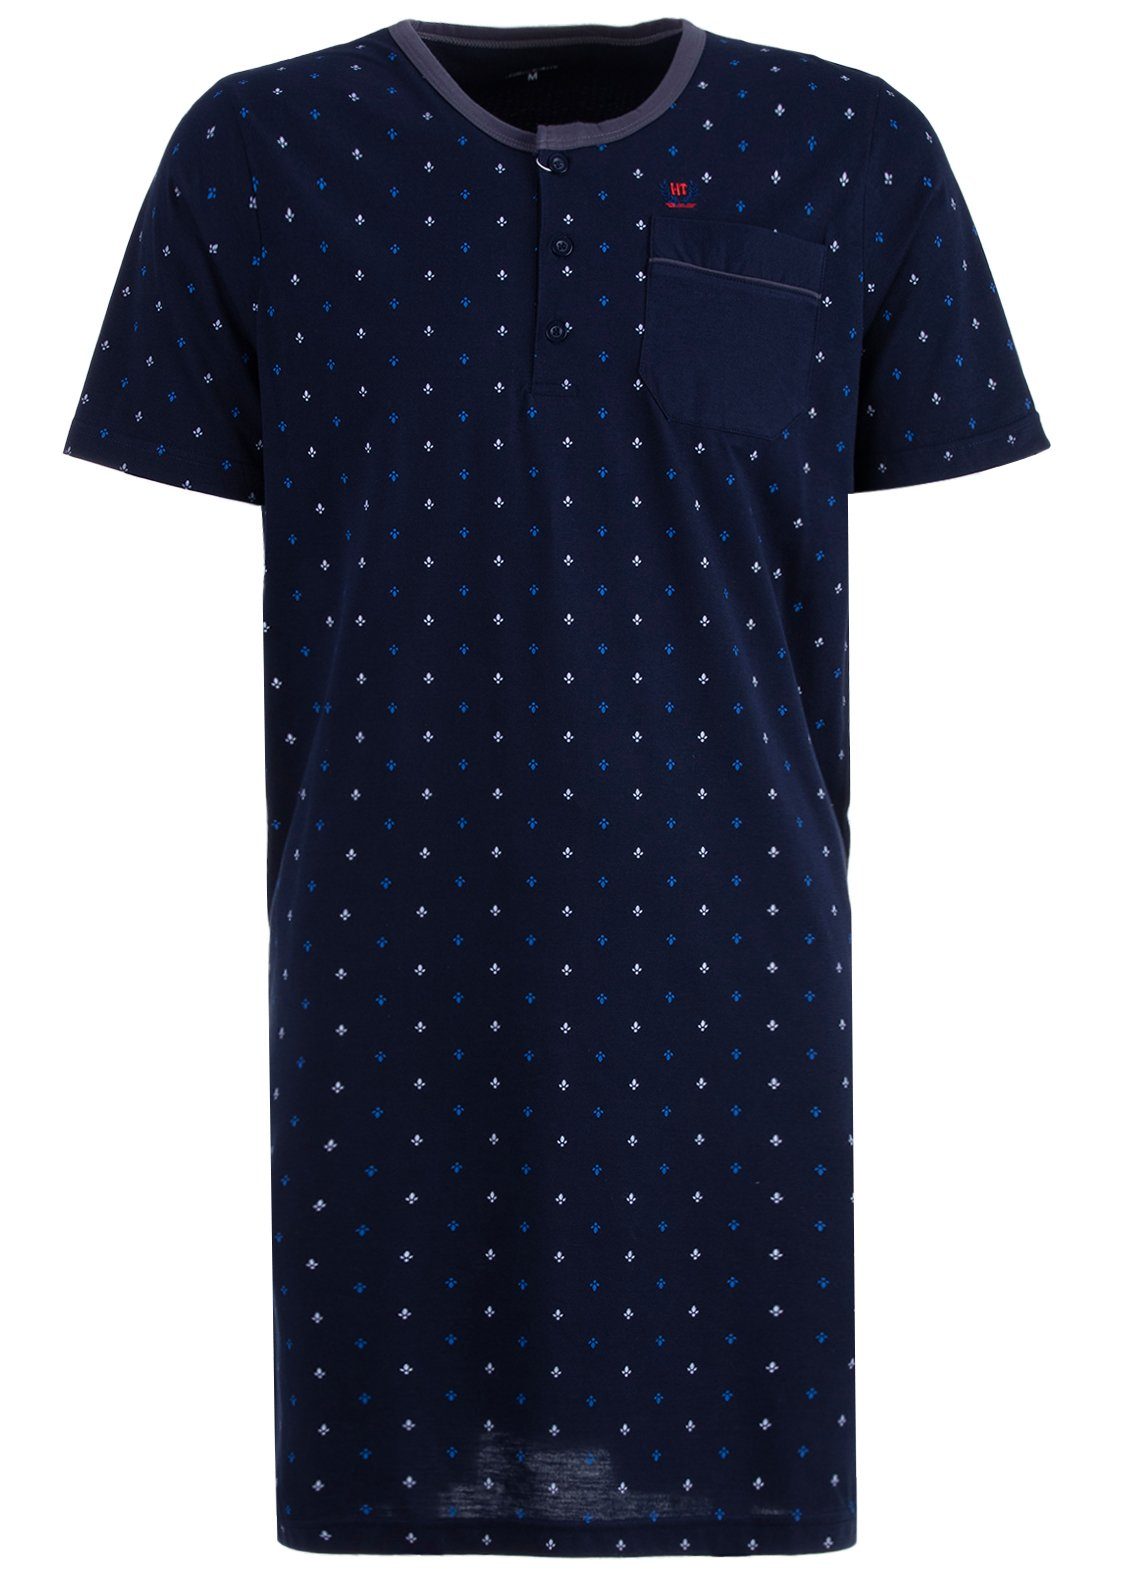 Henry Terre Nachthemd Nachthemd Kurzarm - Blatt navy